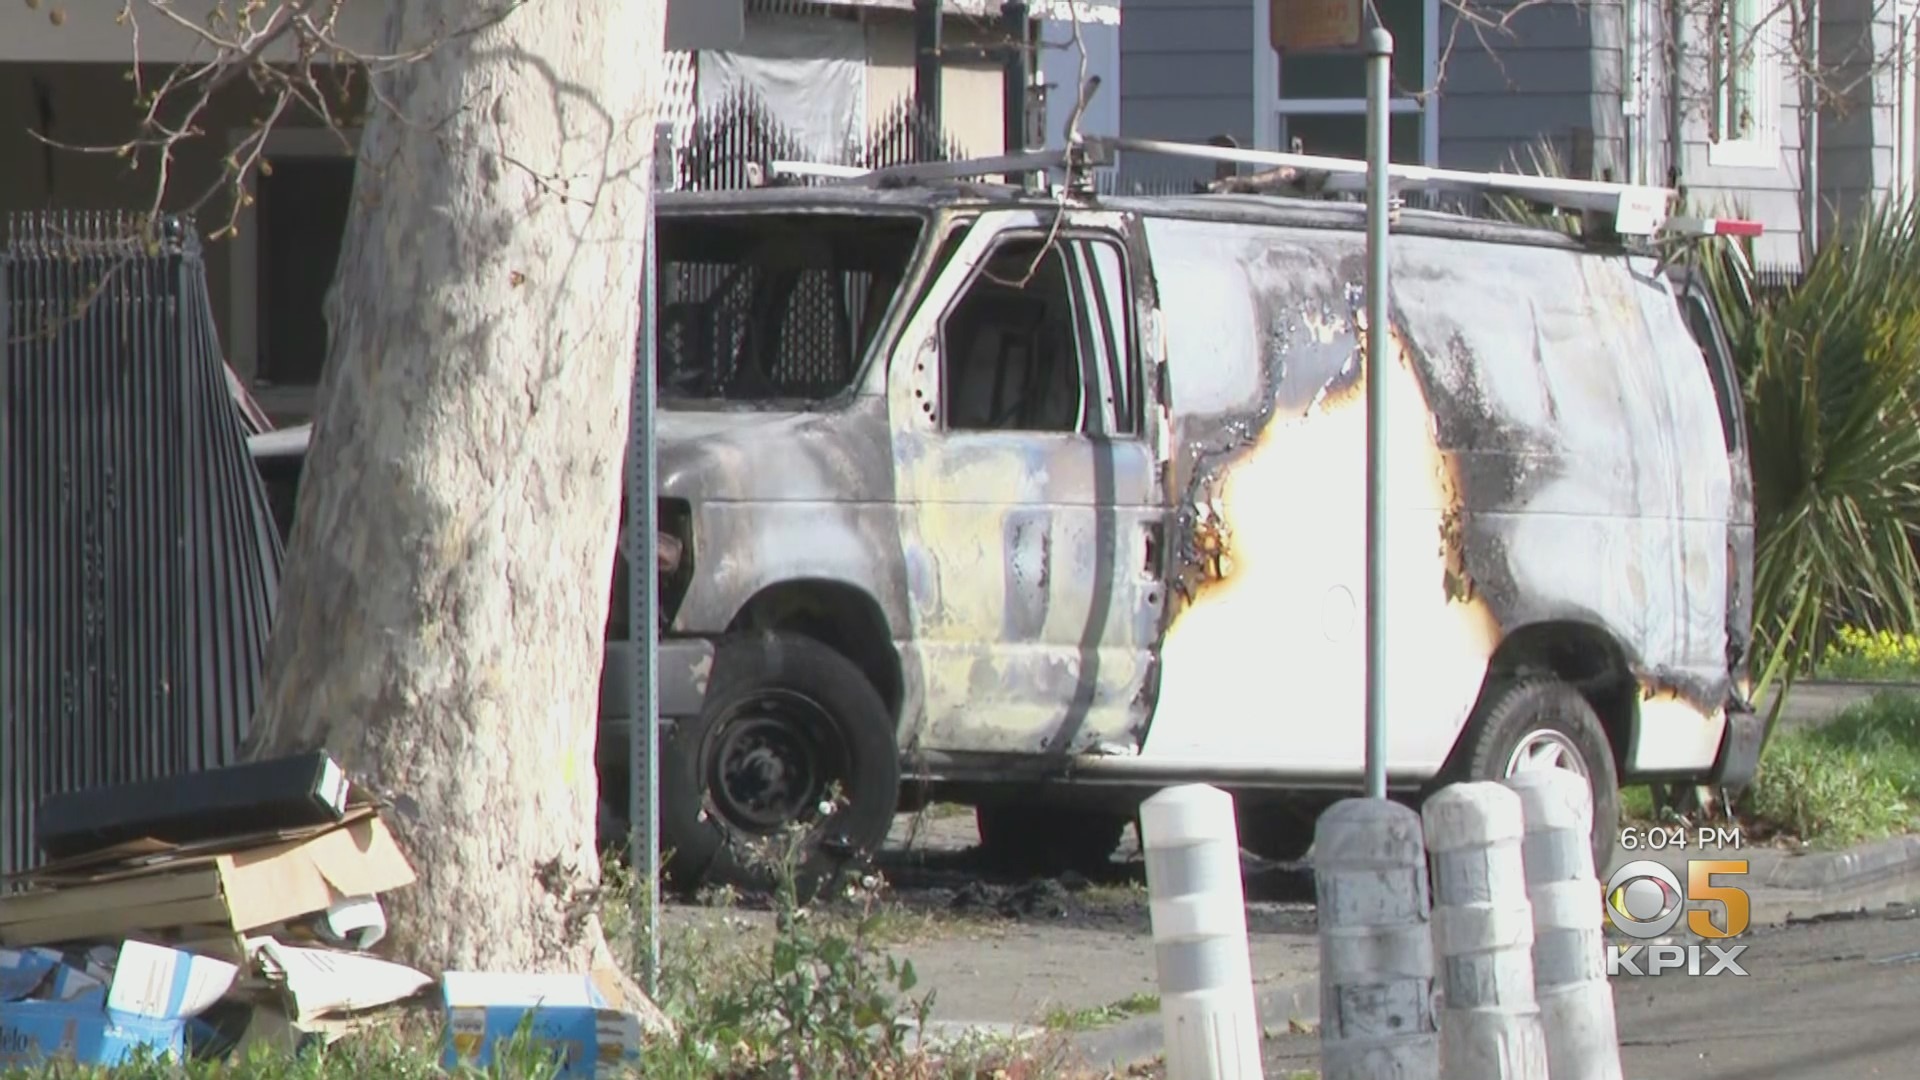 UPDATE: Driver Of Stolen Van Dies In Fiery Crash In East Oakland Neighborhood; 2 Officers Hurt